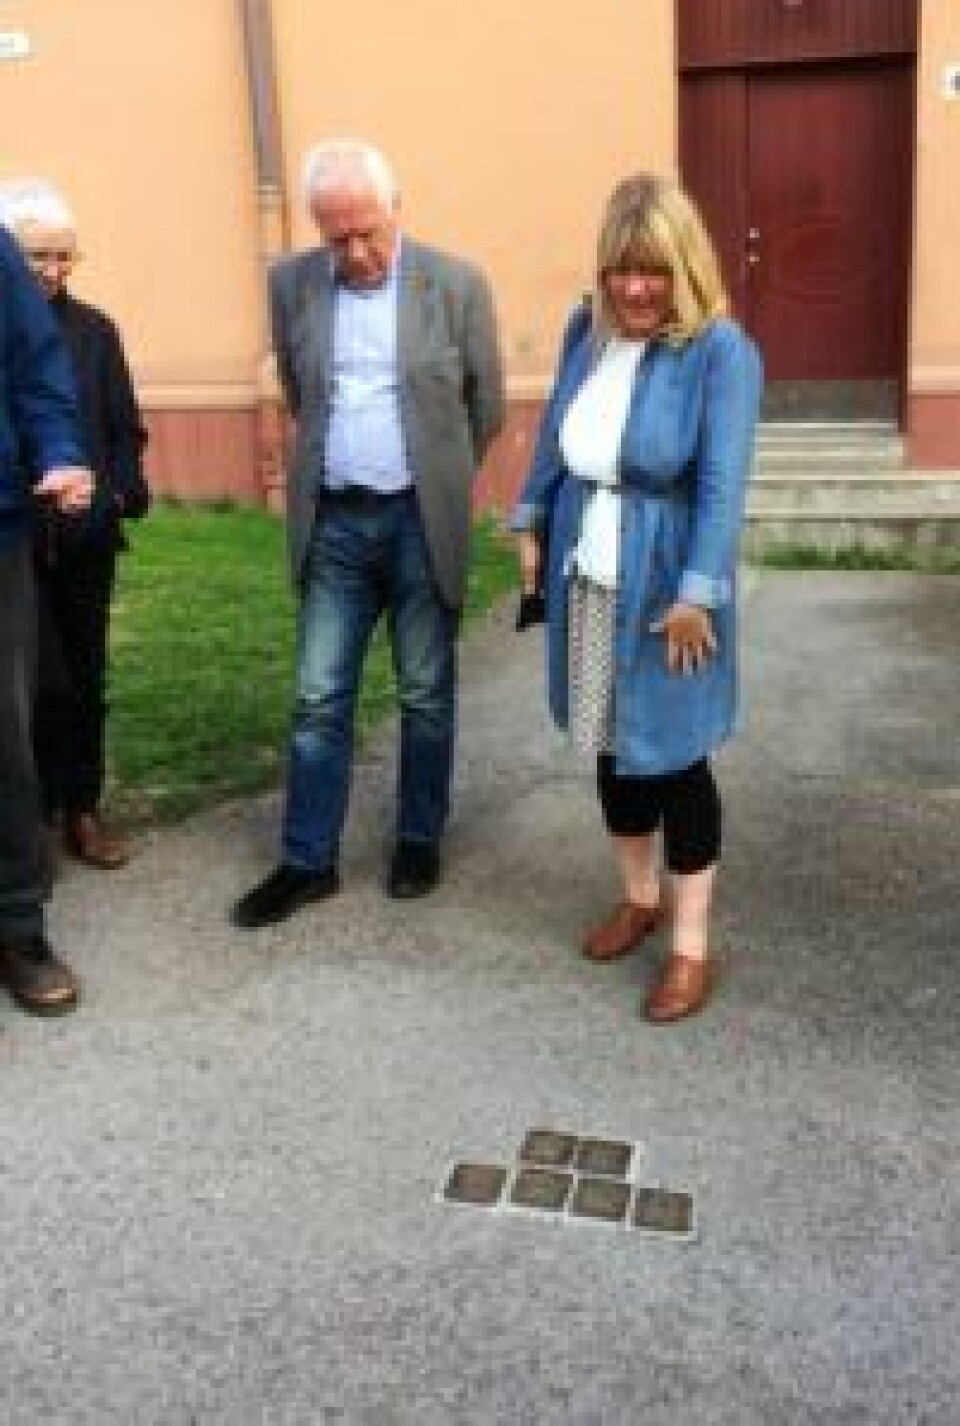 Historiker Gro Røde peker på snublesteinene banket inn i gaten for å minnes historien om jøder som ble deportert og drept i utrydningsleire under 2. verdenskrig. Foto: Kjersti Opstad